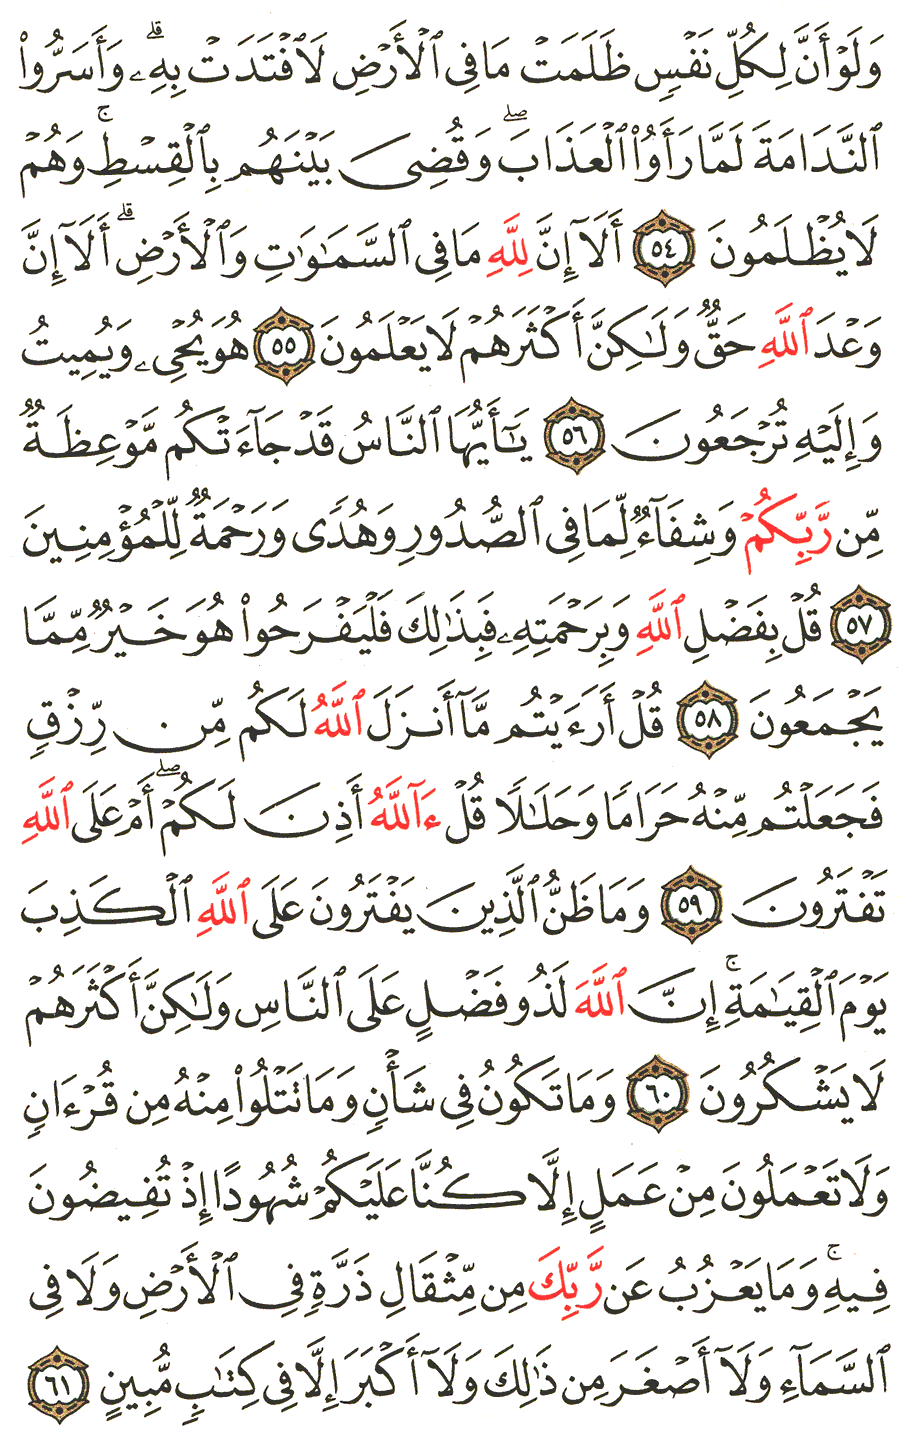 الصفحة 215 من القرآن الكريم